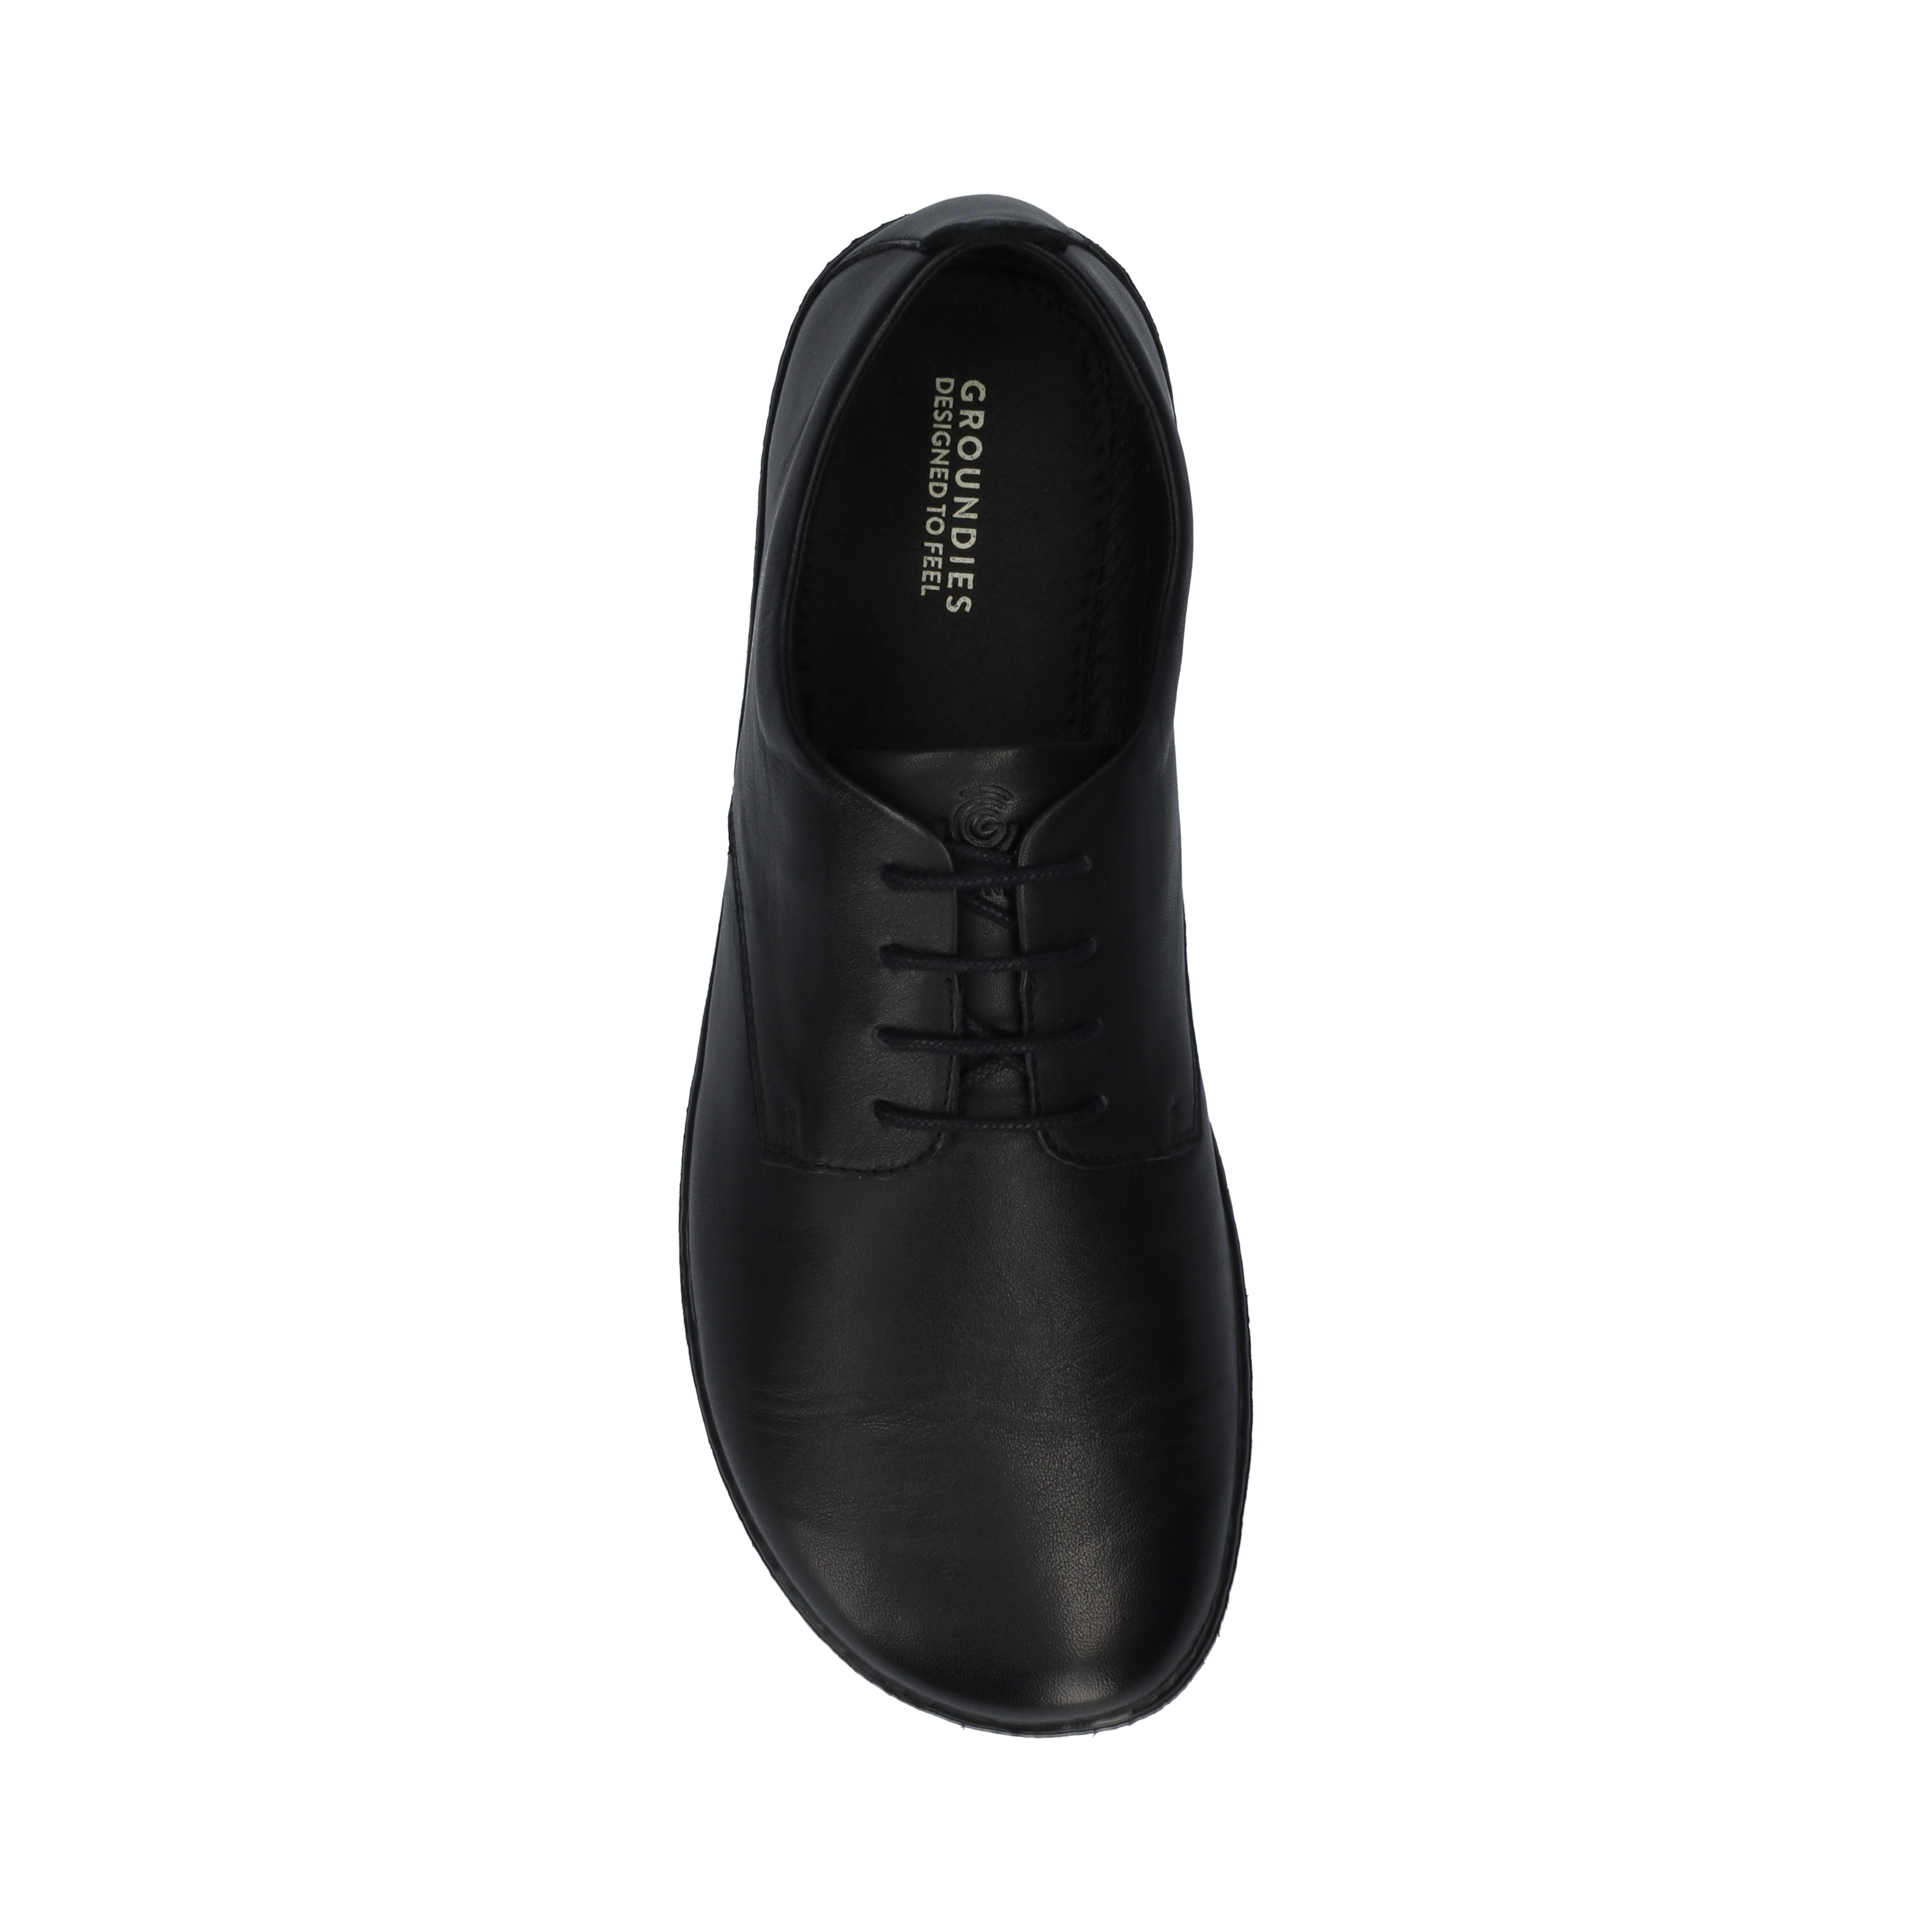 Groundies Palermo Men barfods klassisk oxford sko til mænd i farven black, top